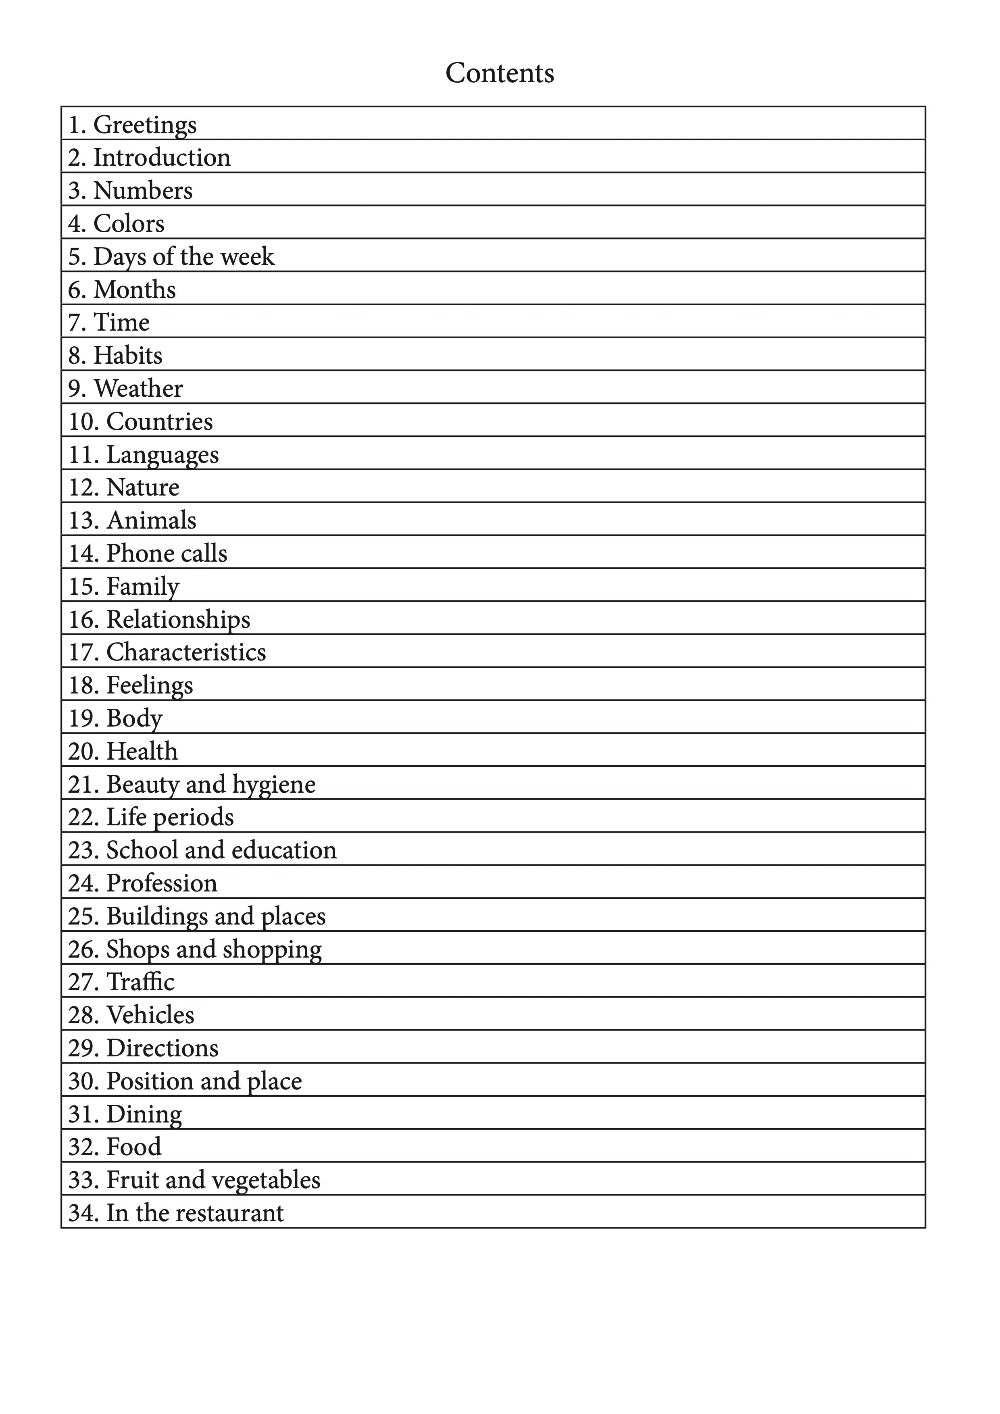 Kirundi language learning notebook contents page 1